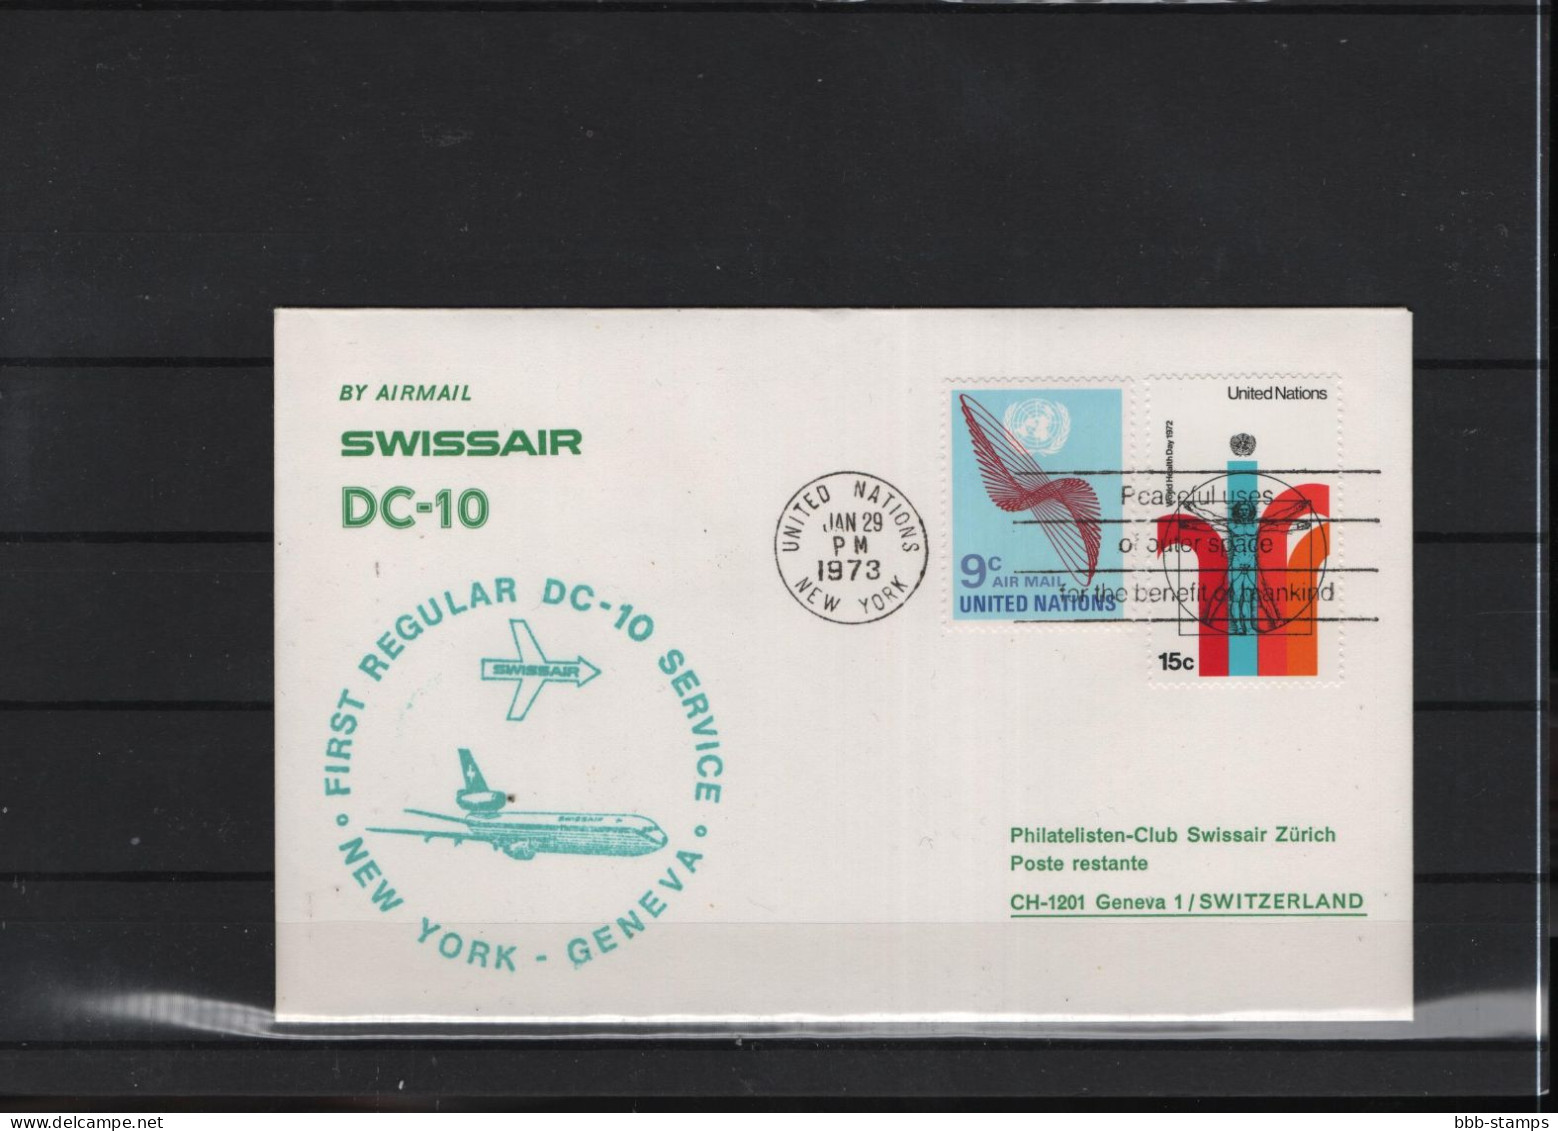 Schweiz Luftpost FFC Swissair  2.5..1972 New York - Genf - Erst- U. Sonderflugbriefe